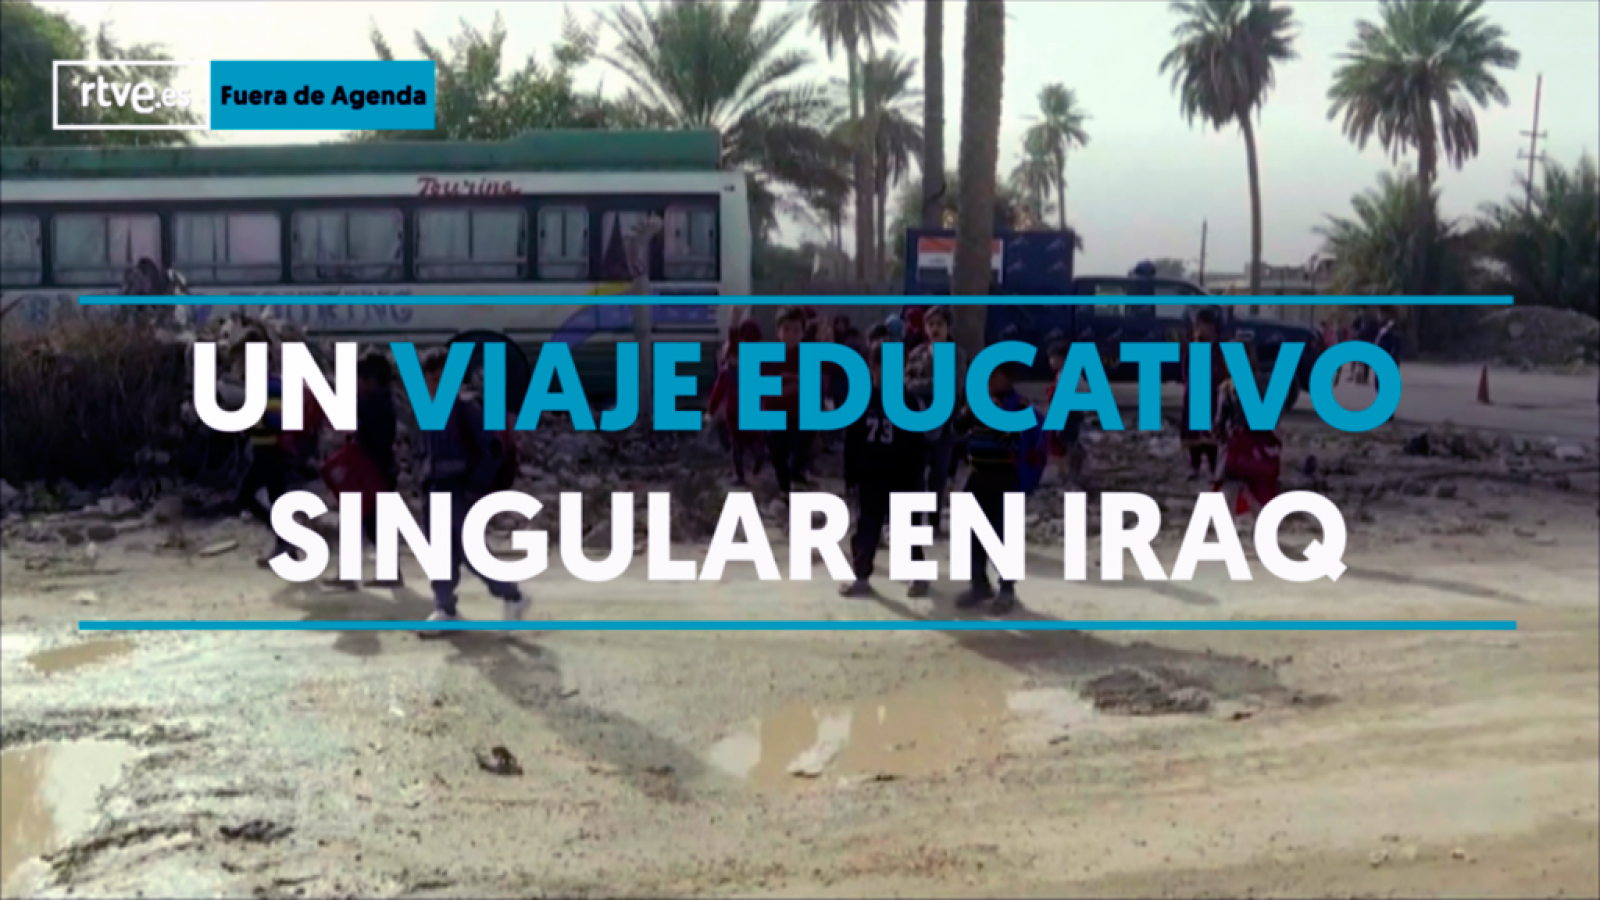 Irak: Un viaje educativo singular